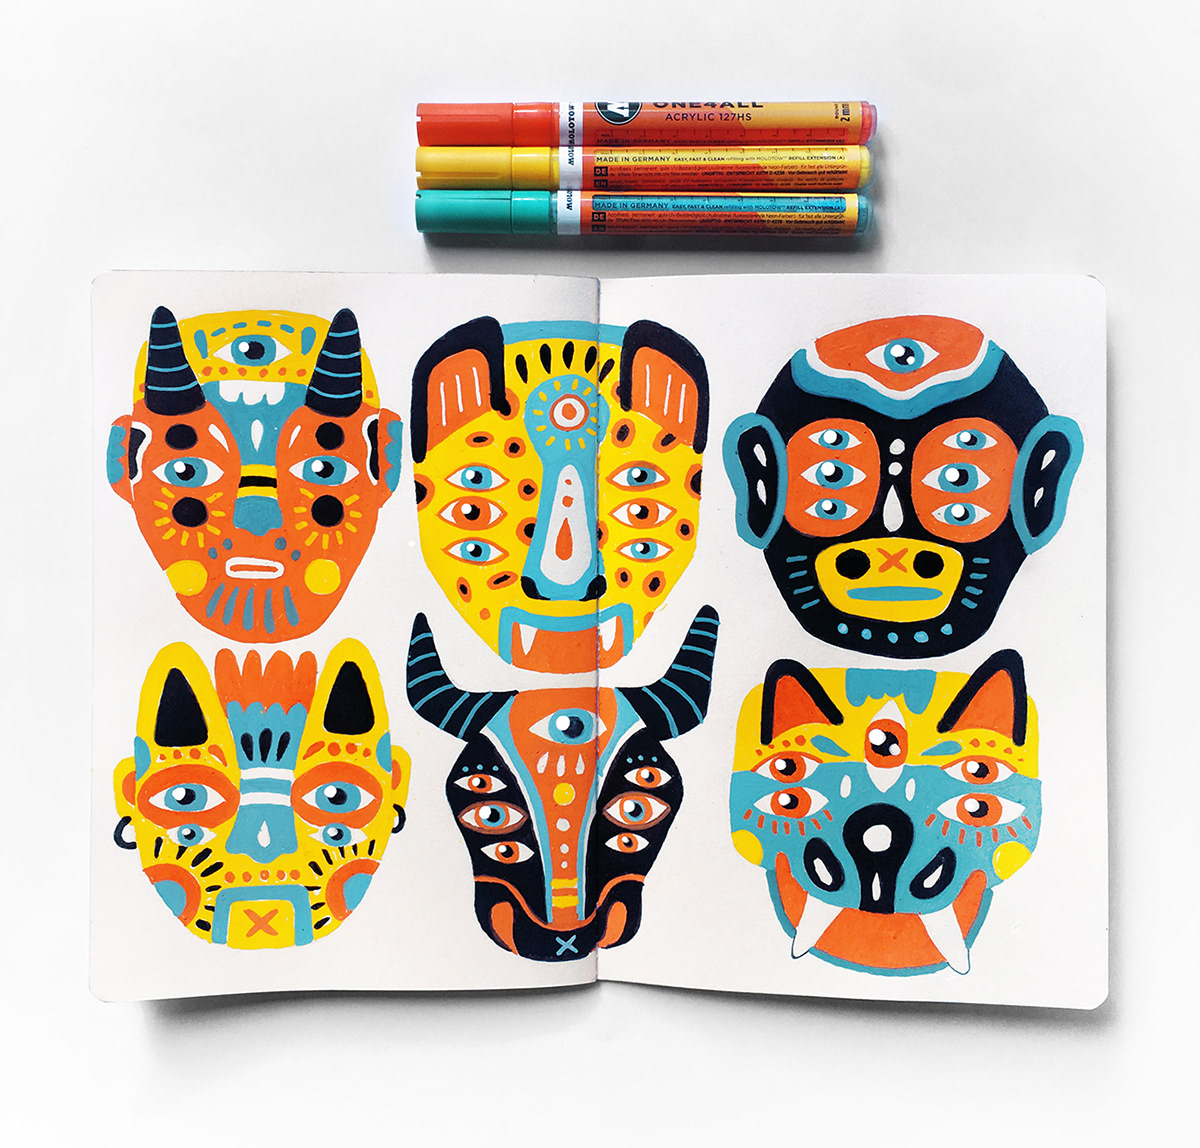 Guatemala ILLUSTRATION  paint markers characterdesing textures mask brush acrylic surrealism